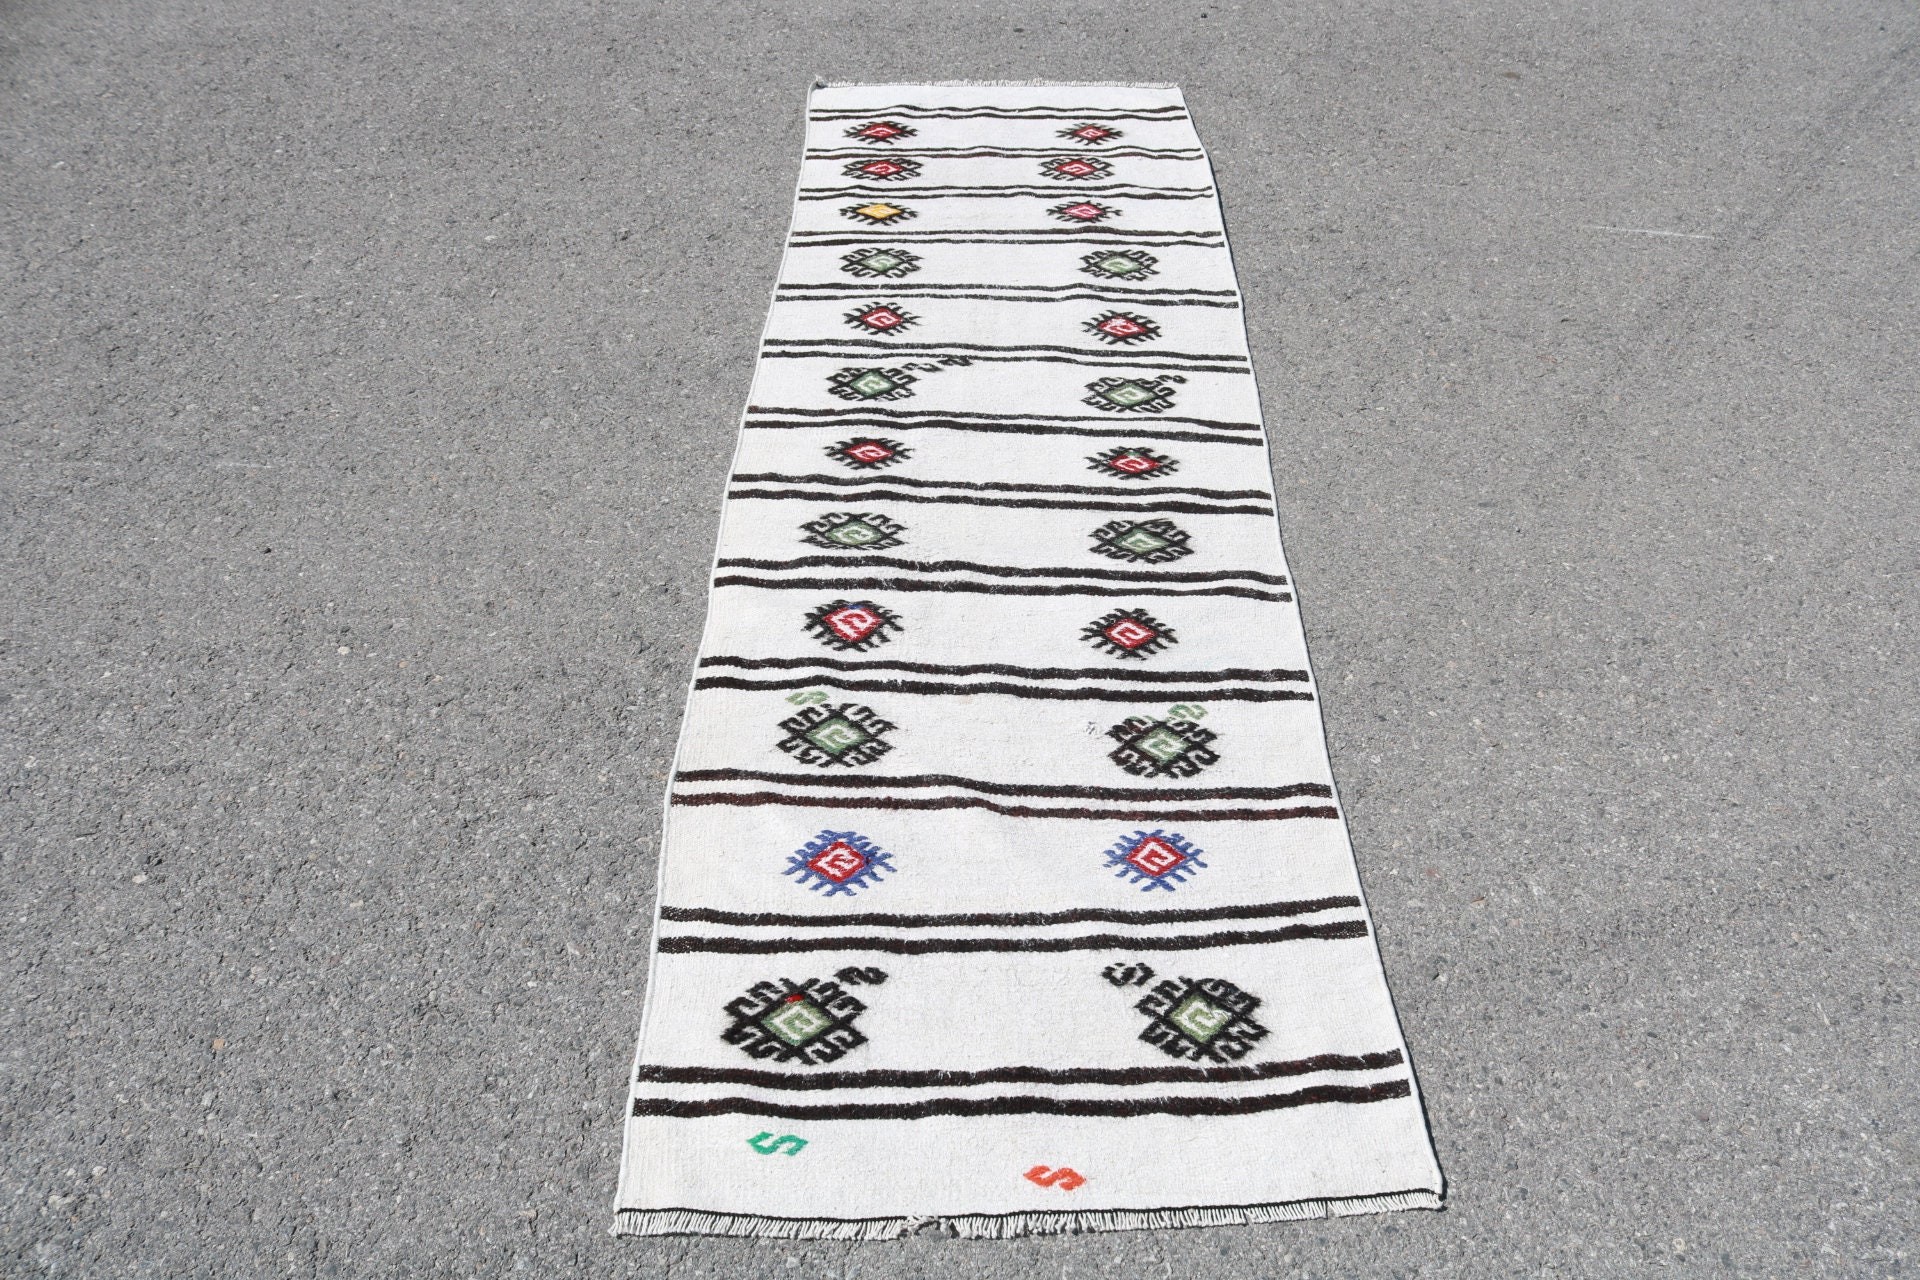 Turkish Rug, Vintage Rugs, Hallway Rugs, Aesthetic Rugs, Kitchen Rug, Stair Rugs, Rugs for Runner, 2.4x7.9 ft Runner Rug, Anatolian Rugs